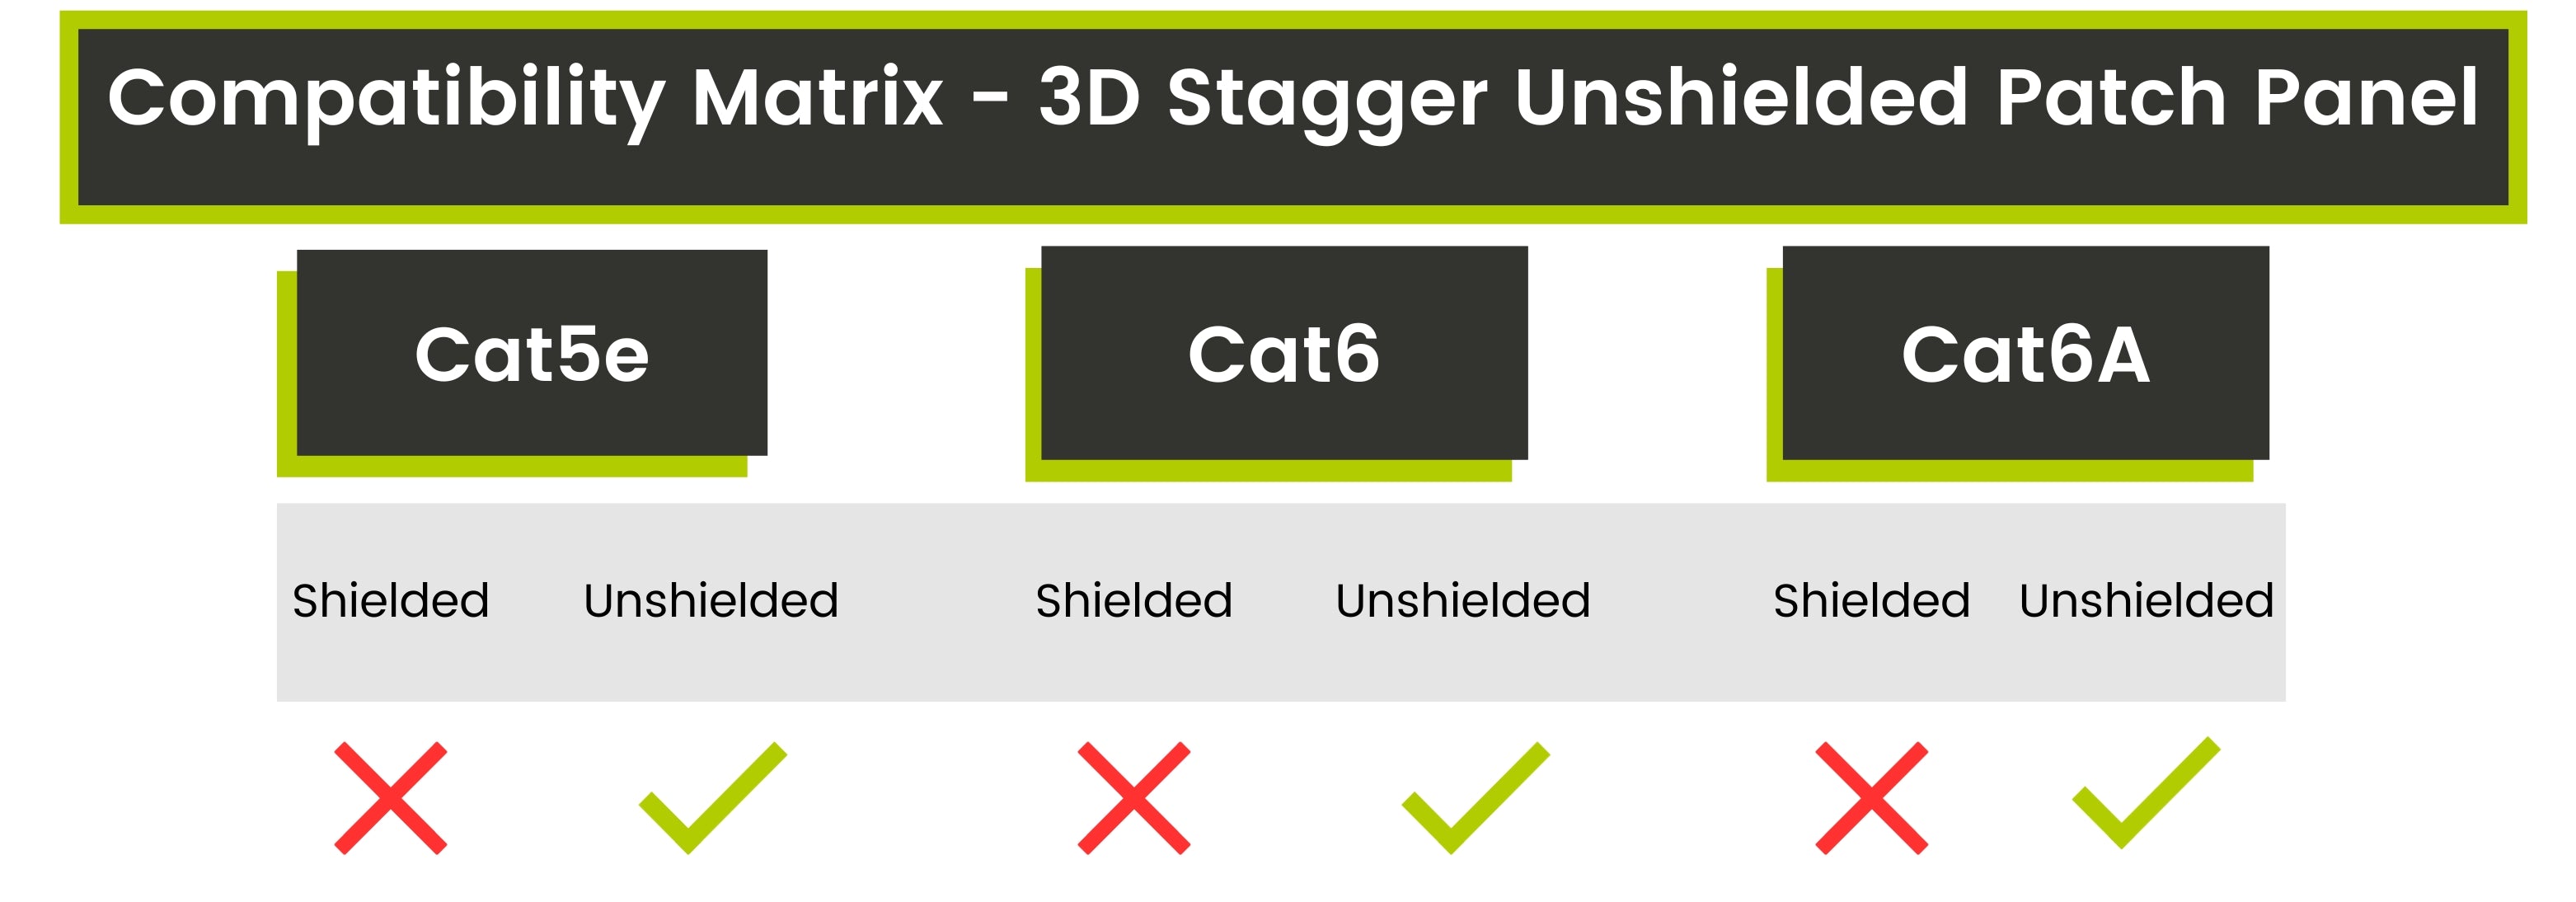 Compatibility Matrix - 3D Stagger Unshielded Patch Panel